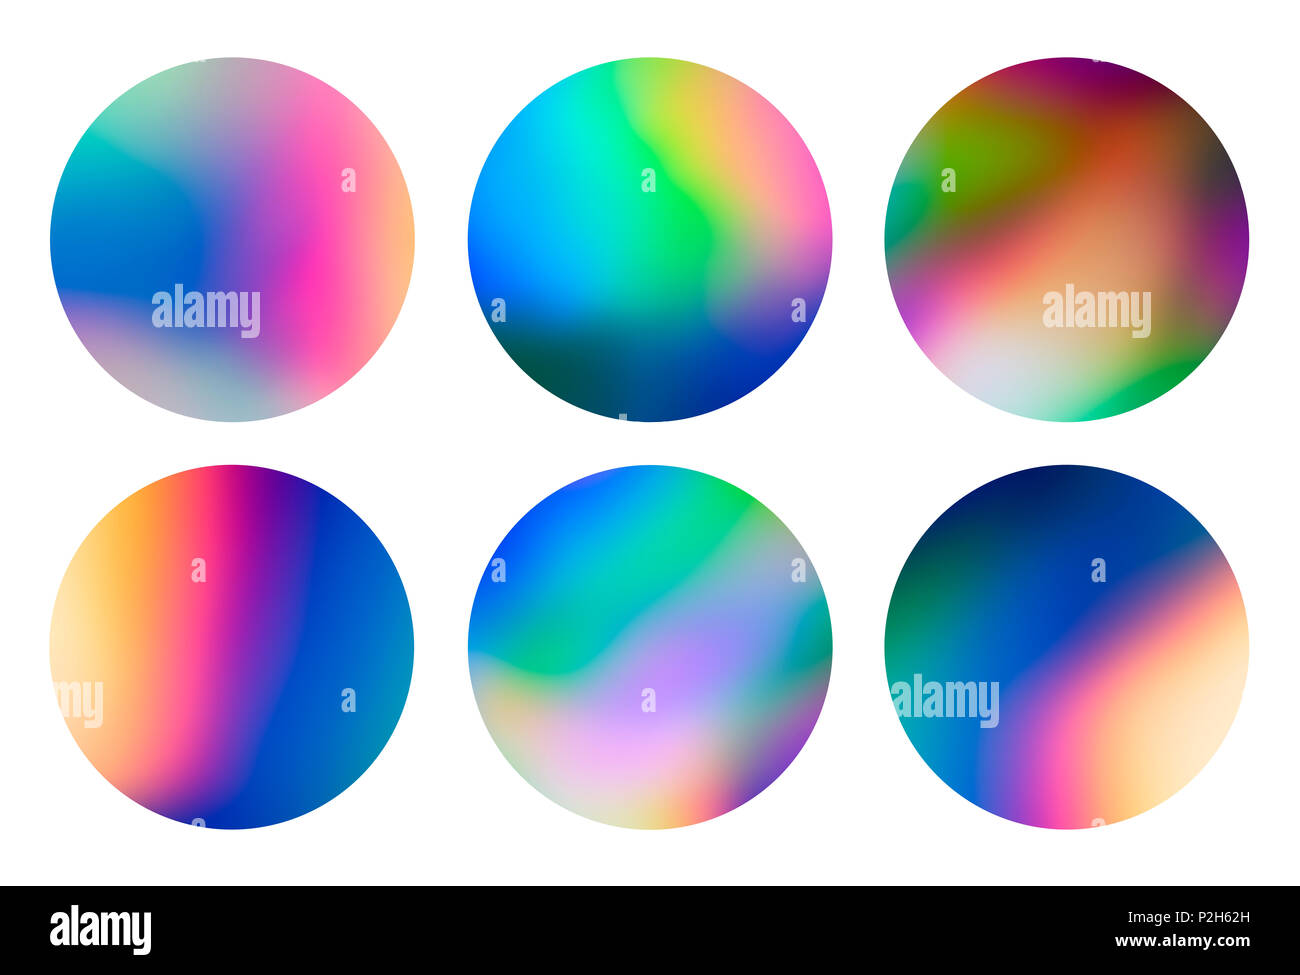 Résumé du spectre circulaire holographique vaporwave conçoit, quartier branché de fond coloré dans des tons pastel couleur néon. Pour couvrir la conception créative, CD, poster, livre Banque D'Images